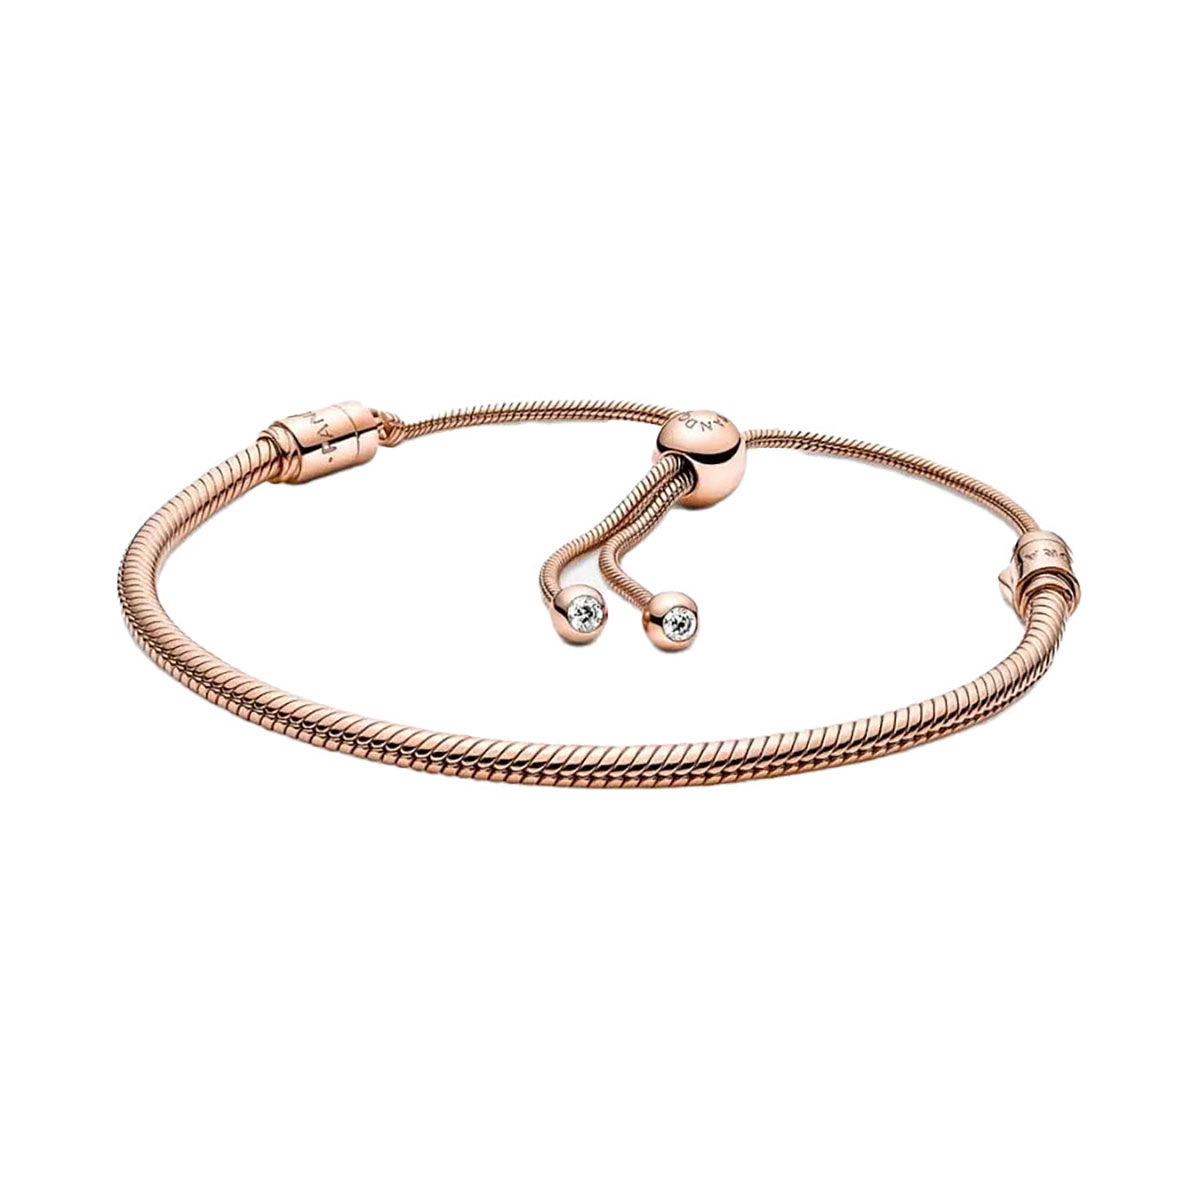 Snake chain 14k rose gold-plated bracelet gift set